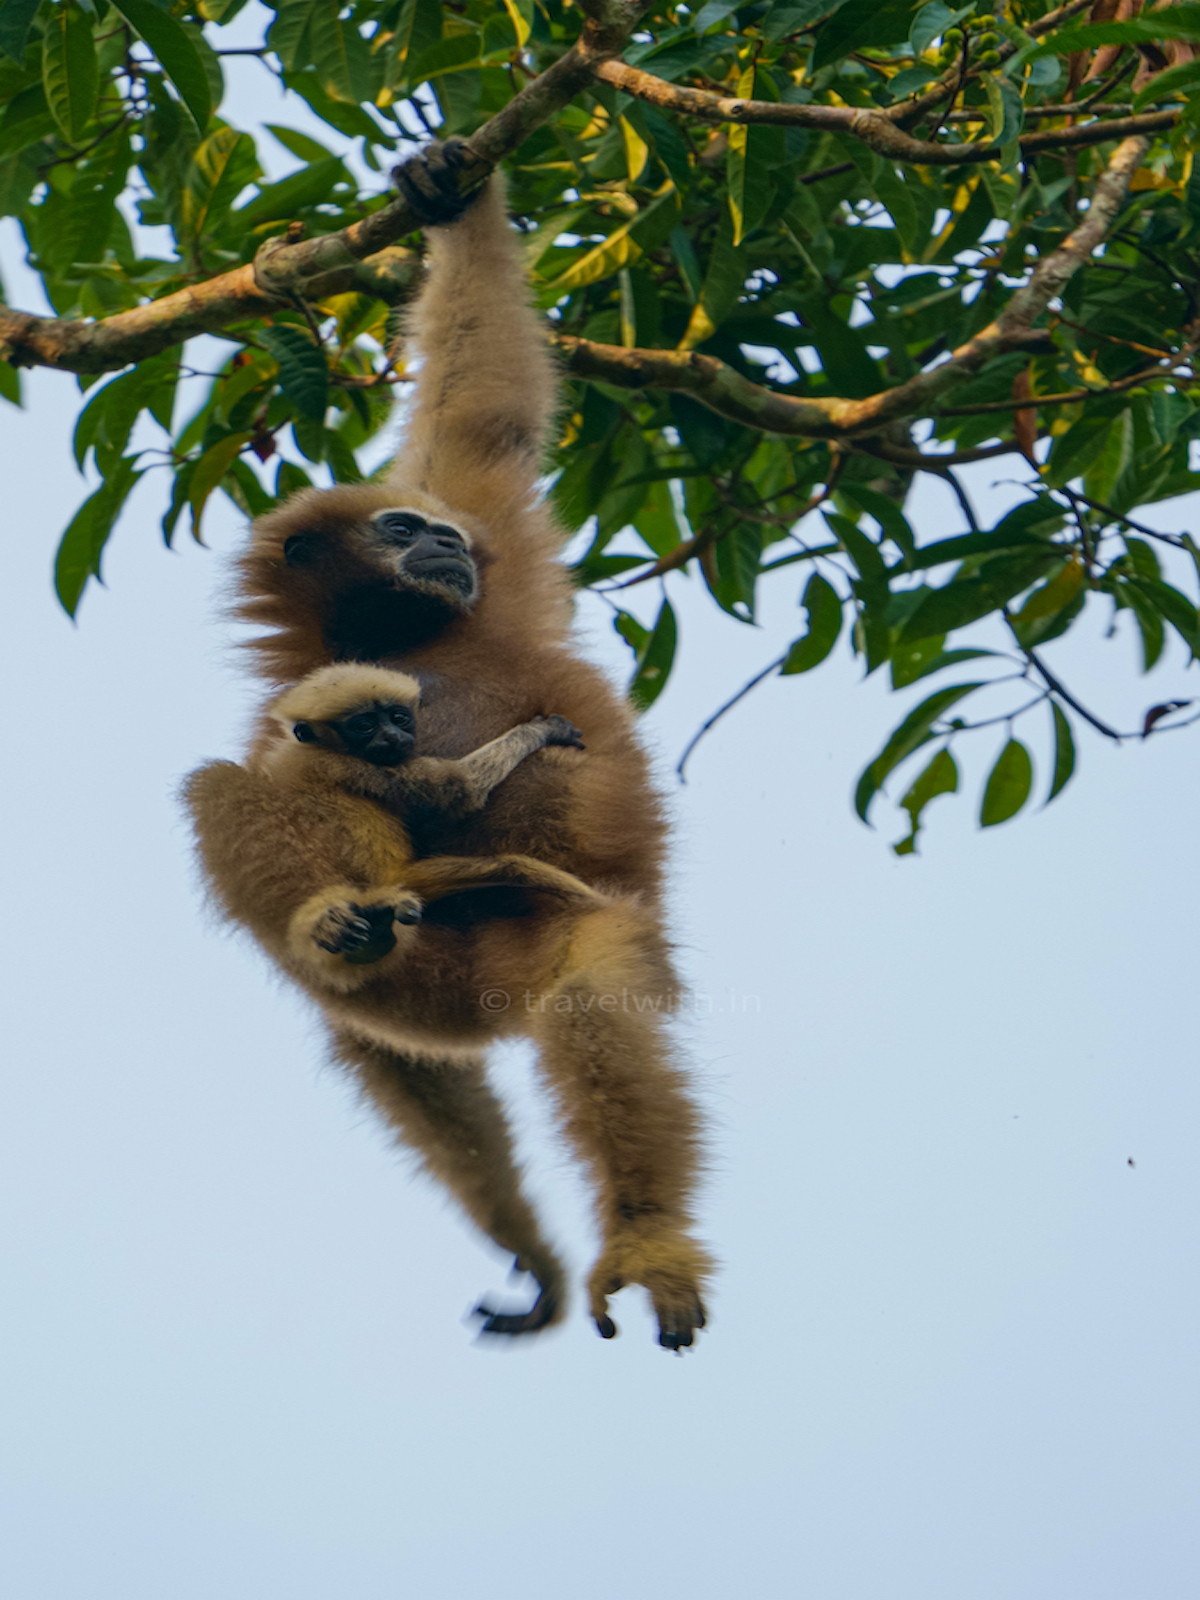 hoollongapar-gibbon-sanctuary-hoolock-gibbon-family-travelwith